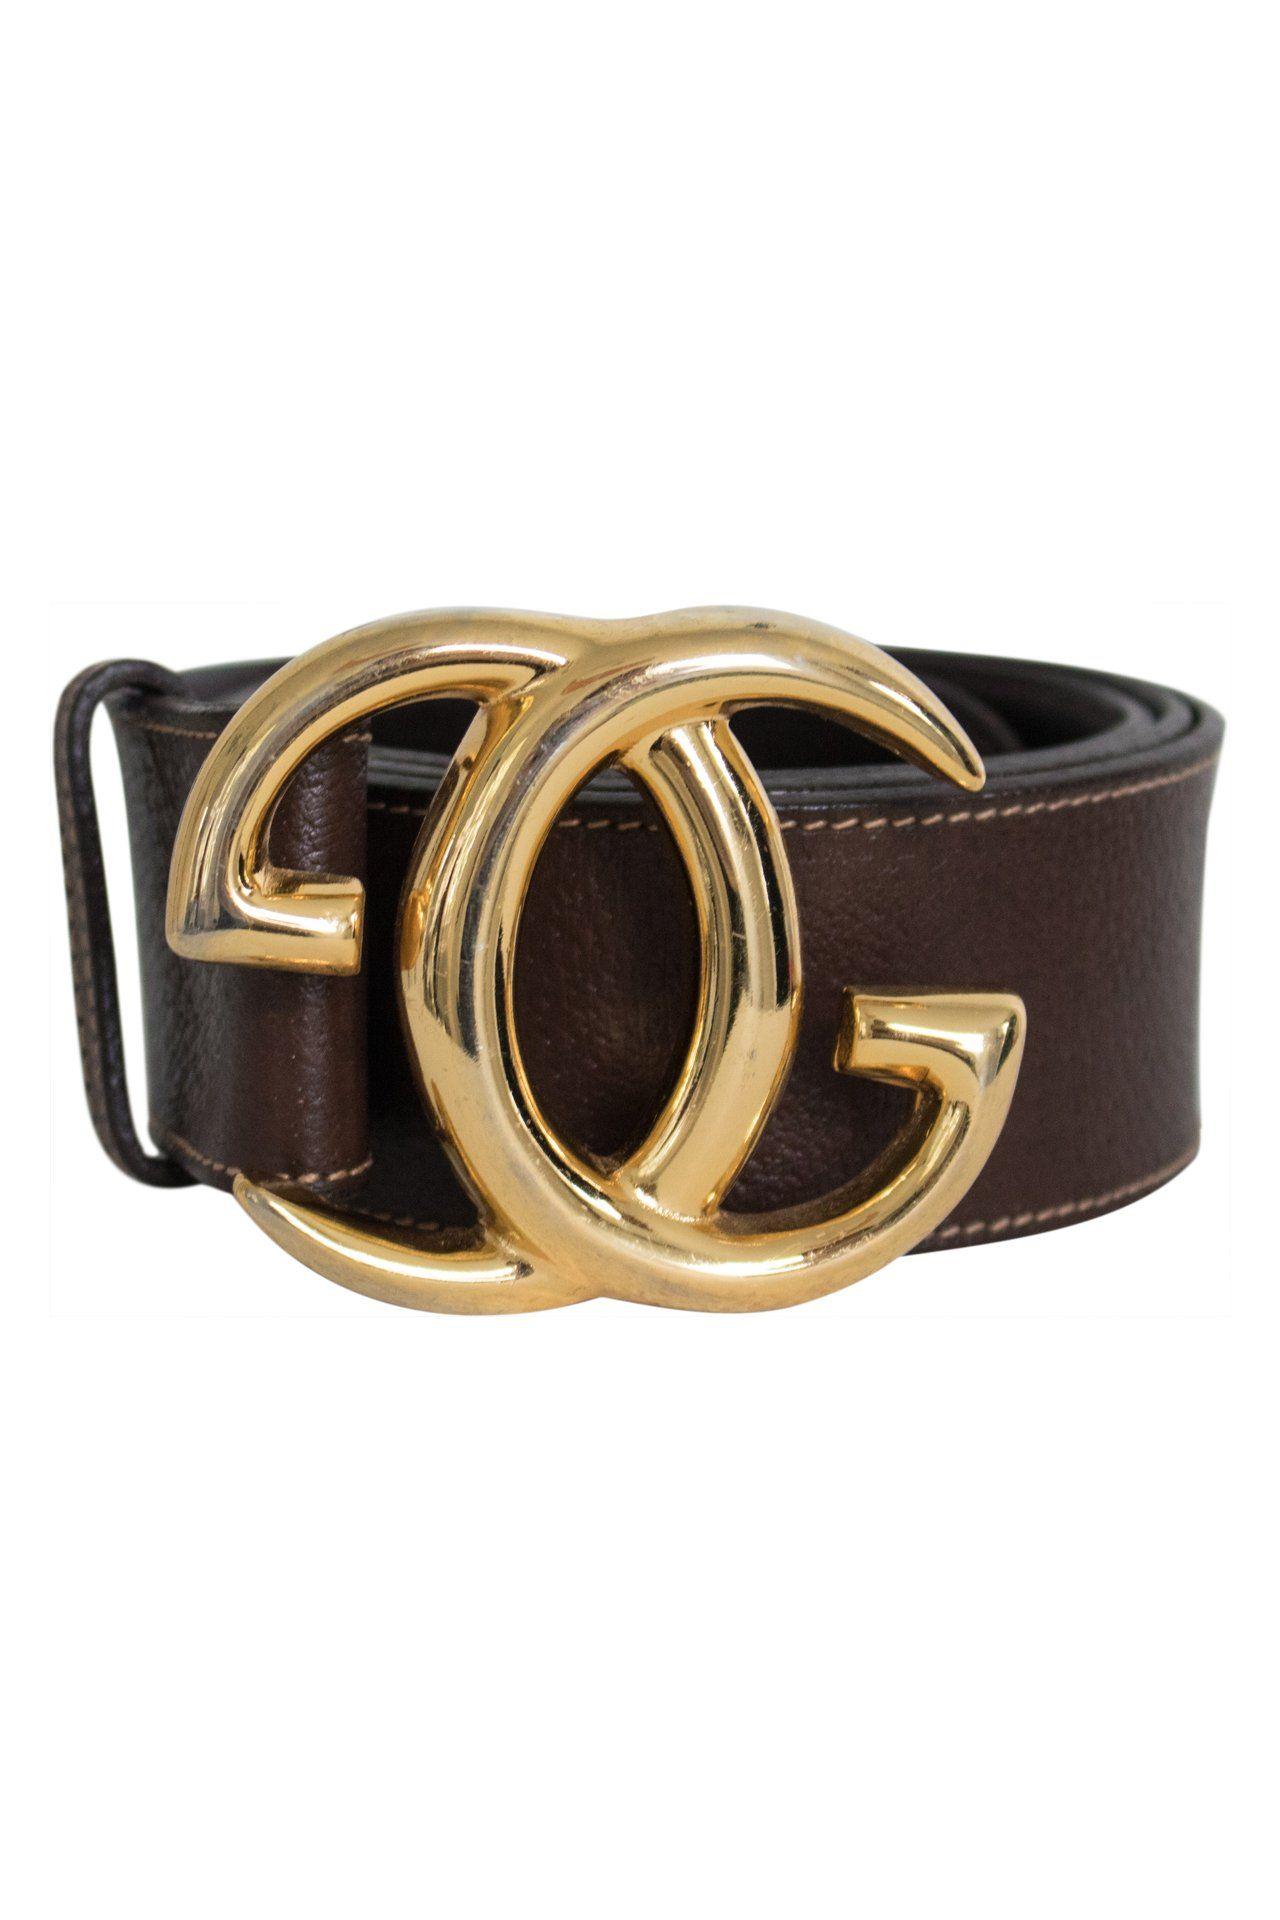 Vintage Gucci Logo - Vintage Gucci Belt- Brown with Large Gold Logo